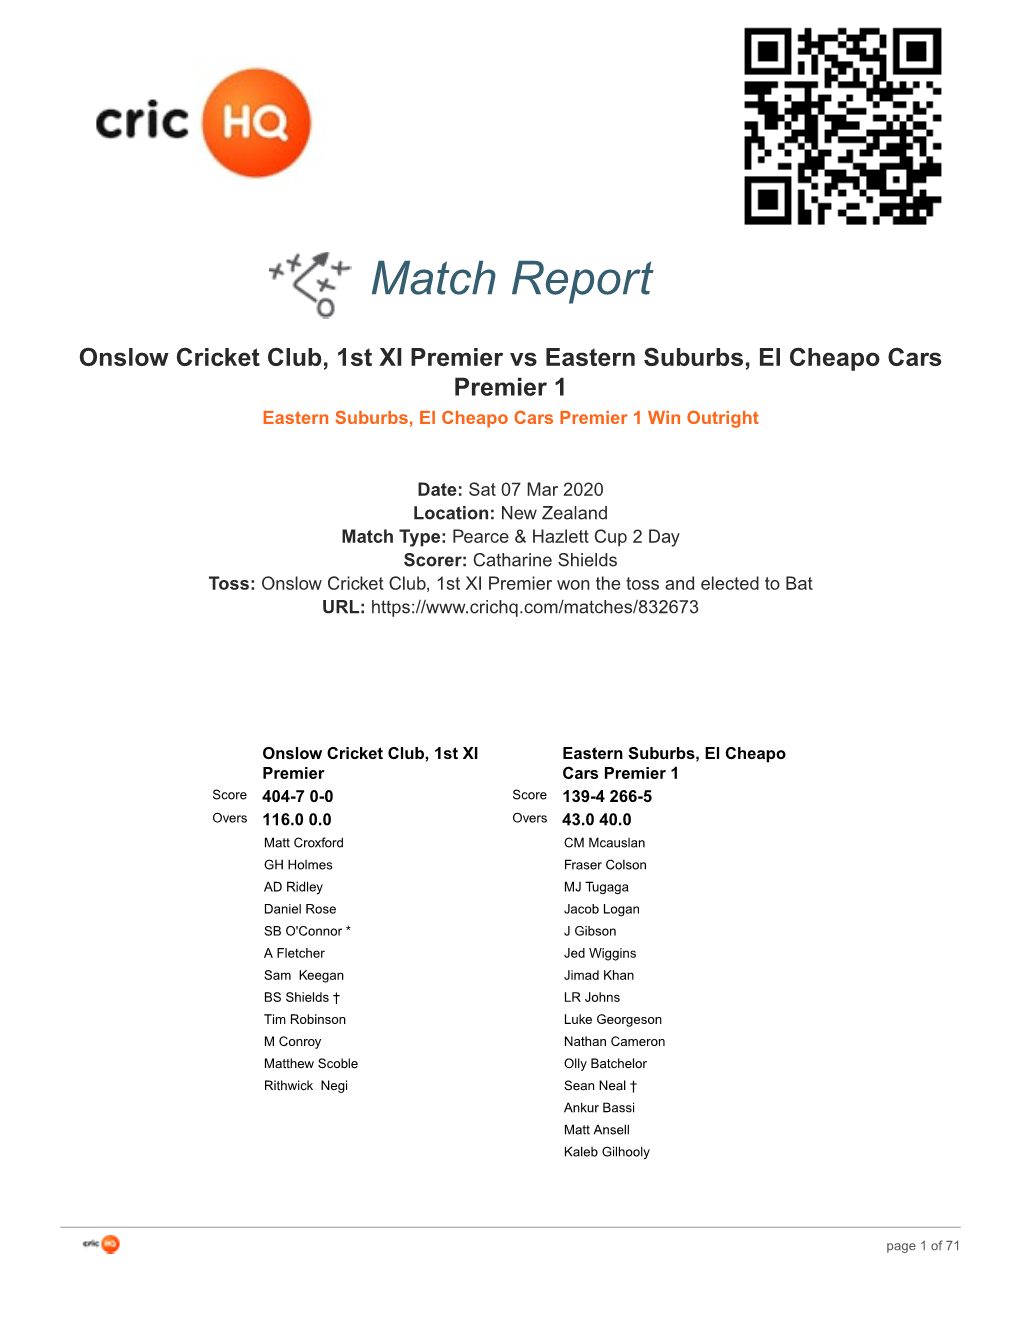 Crichq Match Report